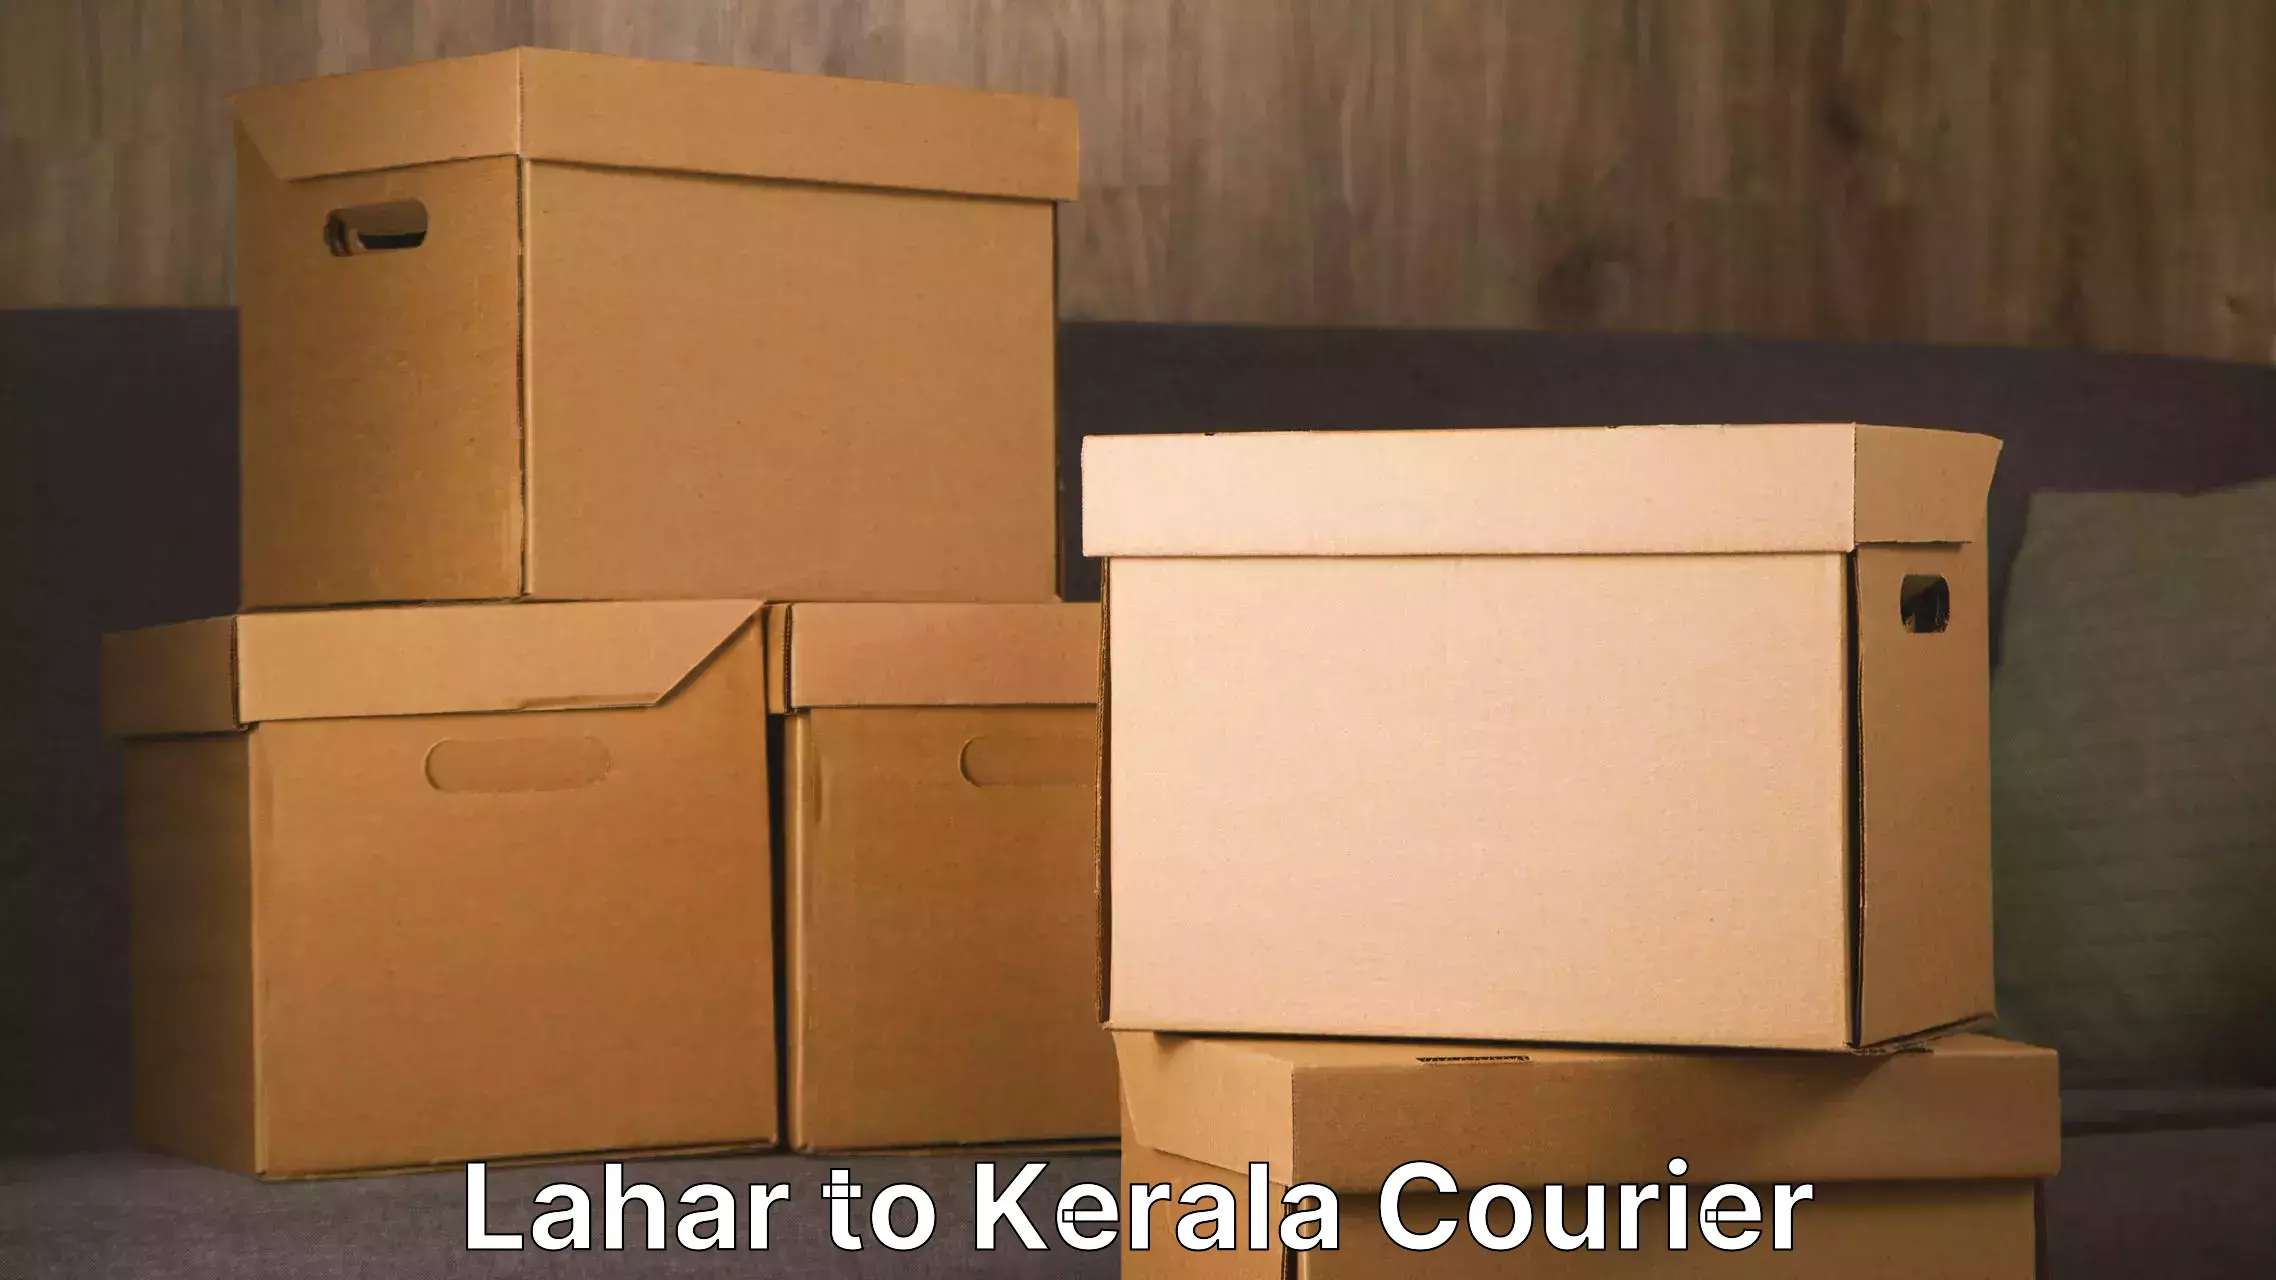 Furniture moving plans Lahar to Kerala